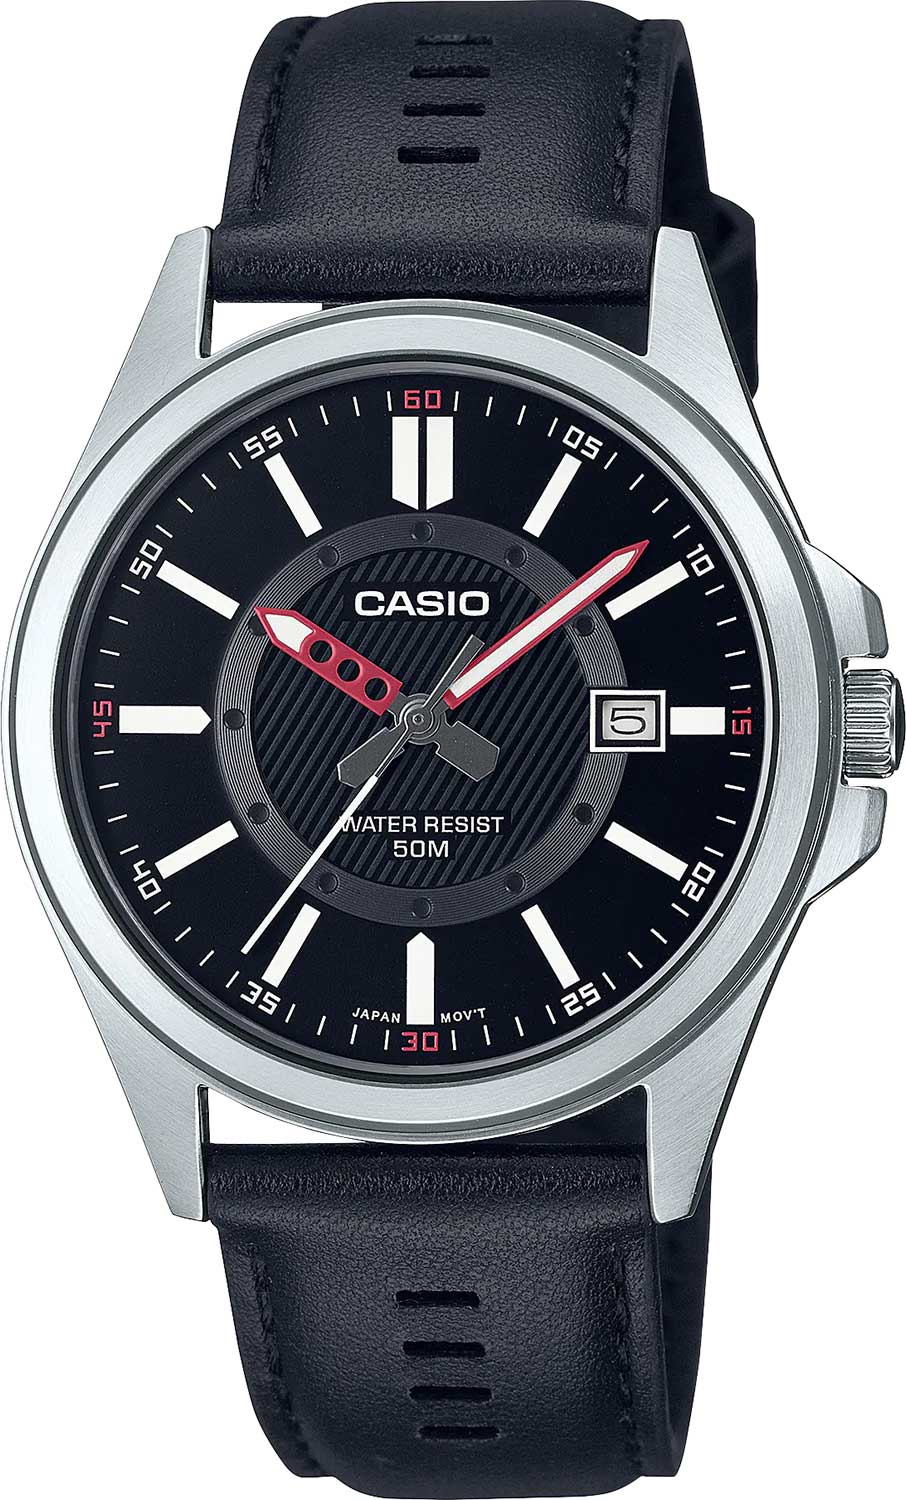    Casio Collection MTP-E700L-1E